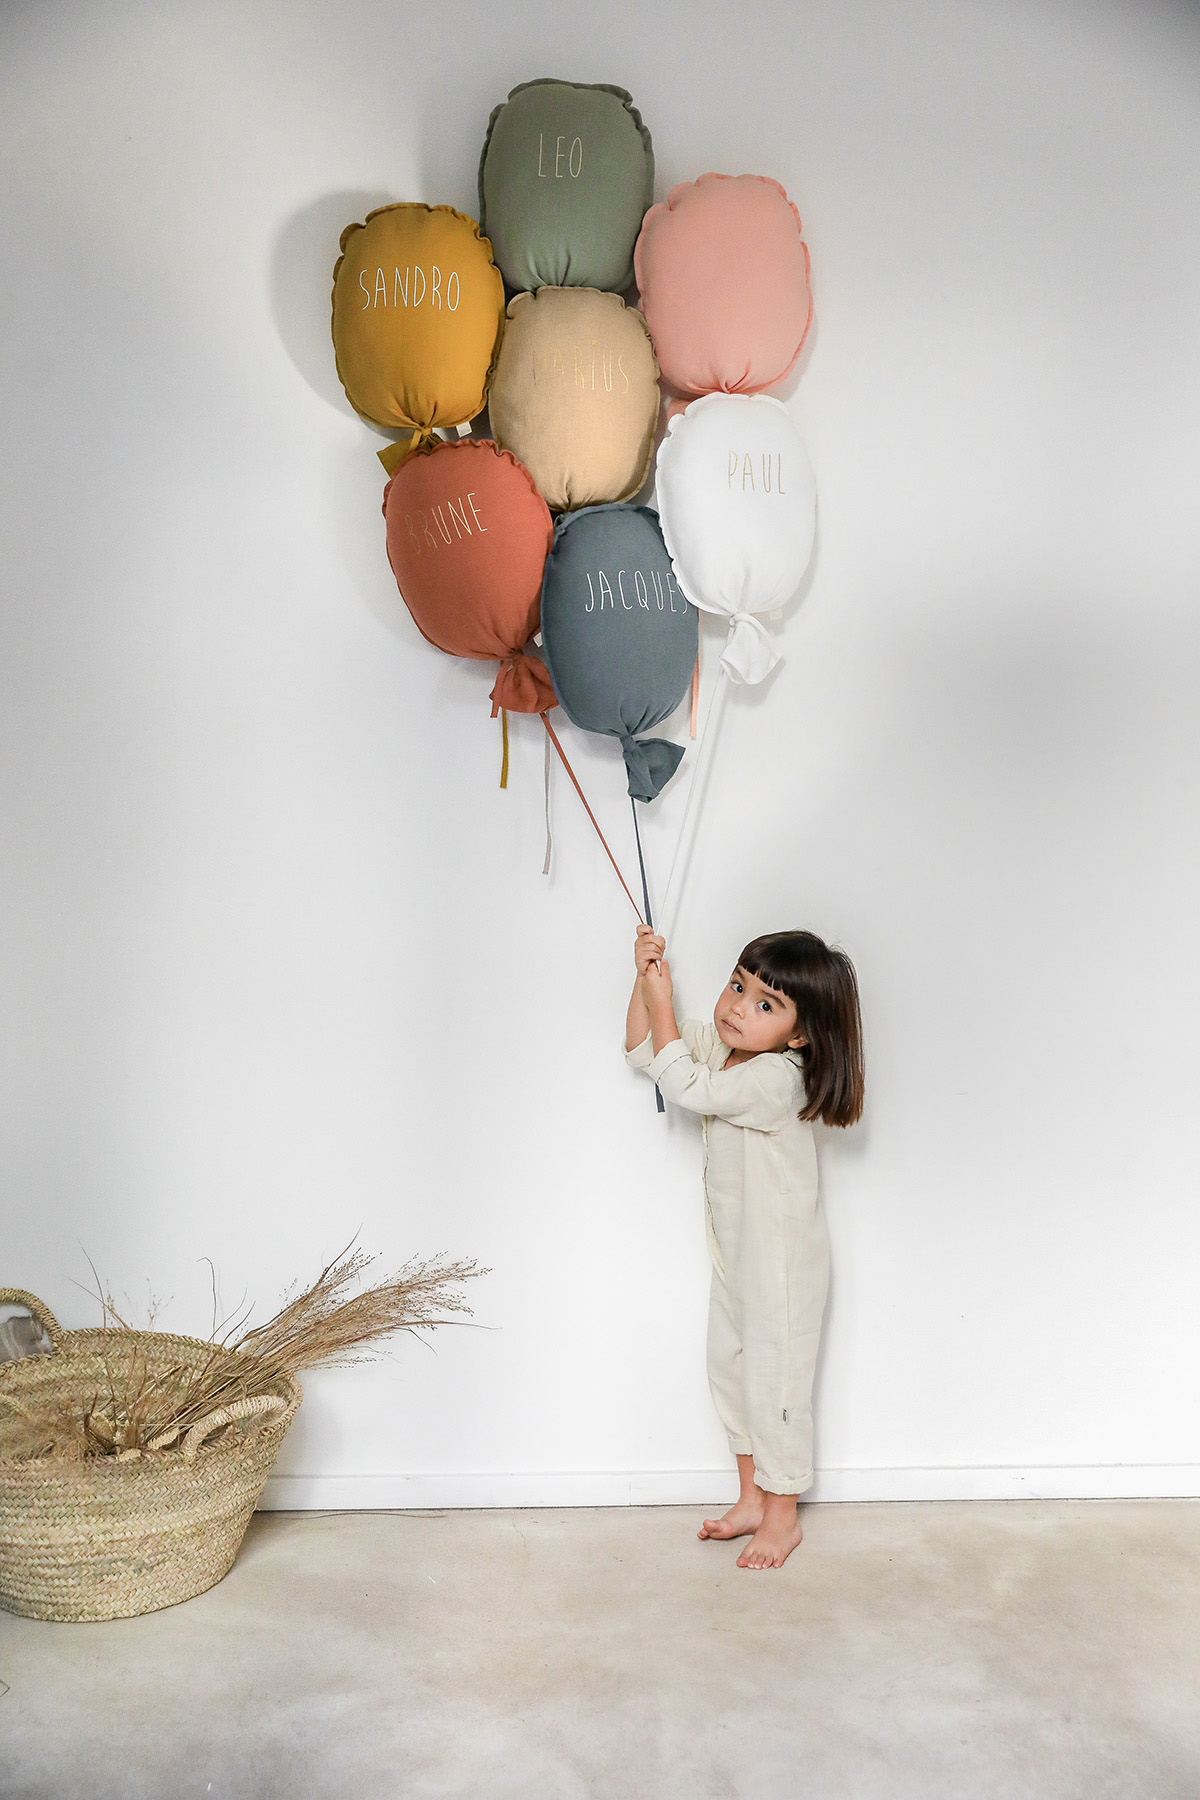 ballon personnalisé en lin décoration chambre enfant